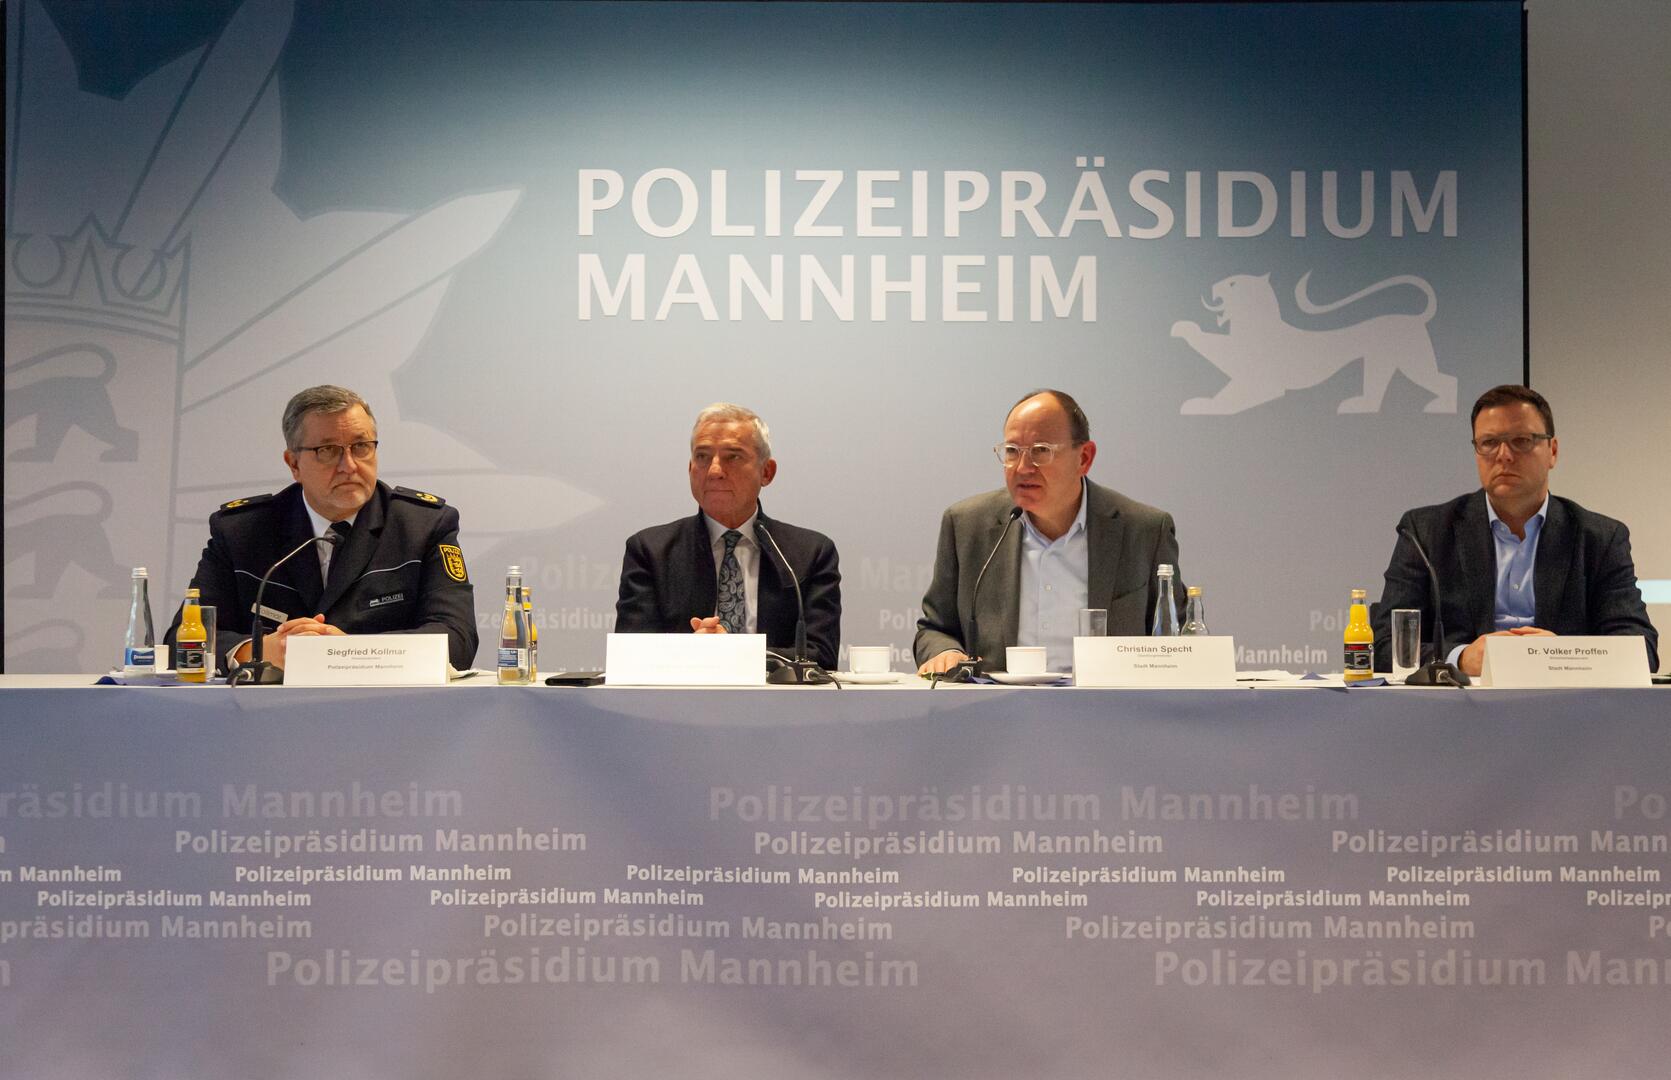 Aktionsplan "Mehr Sicherheit fürMannheim" bekanntgegeben